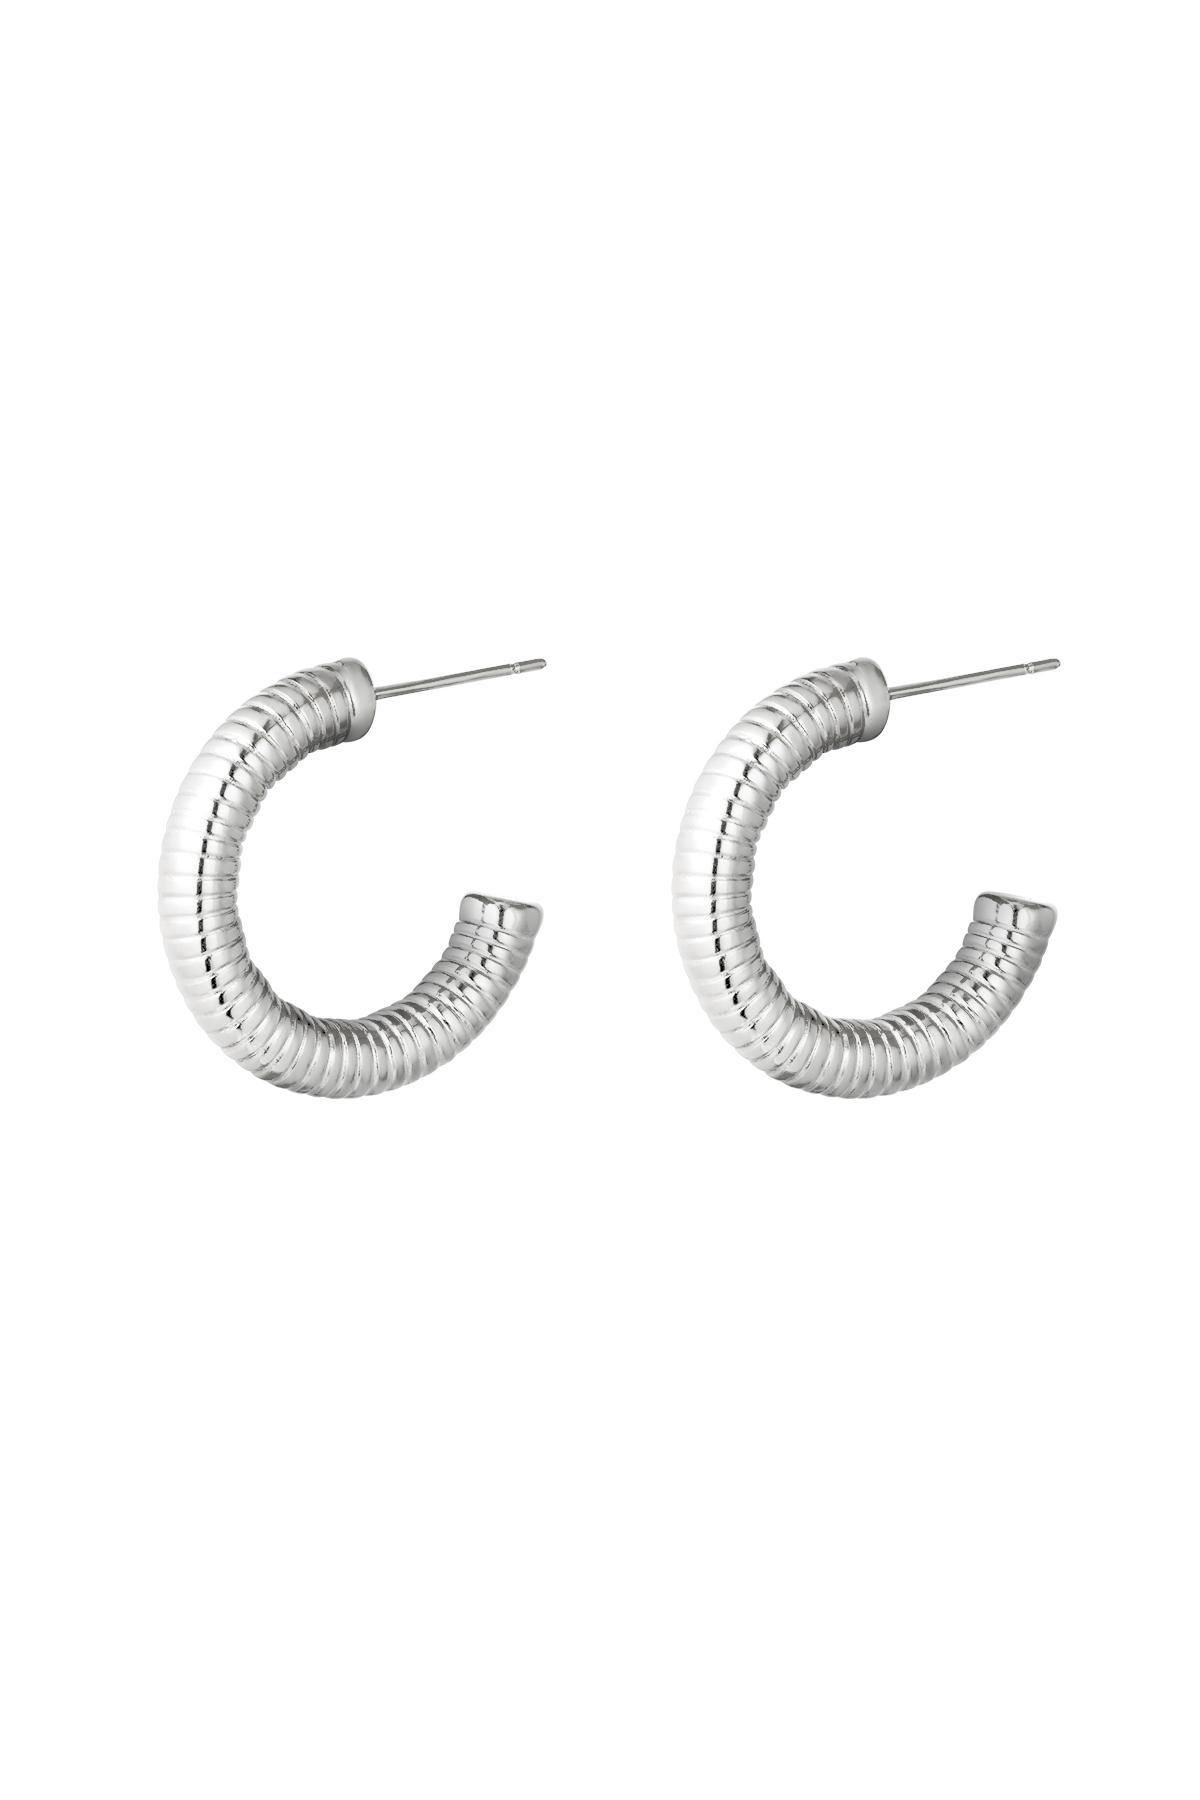 Earrings Hoops Spring Silver Stainless Steel h5 